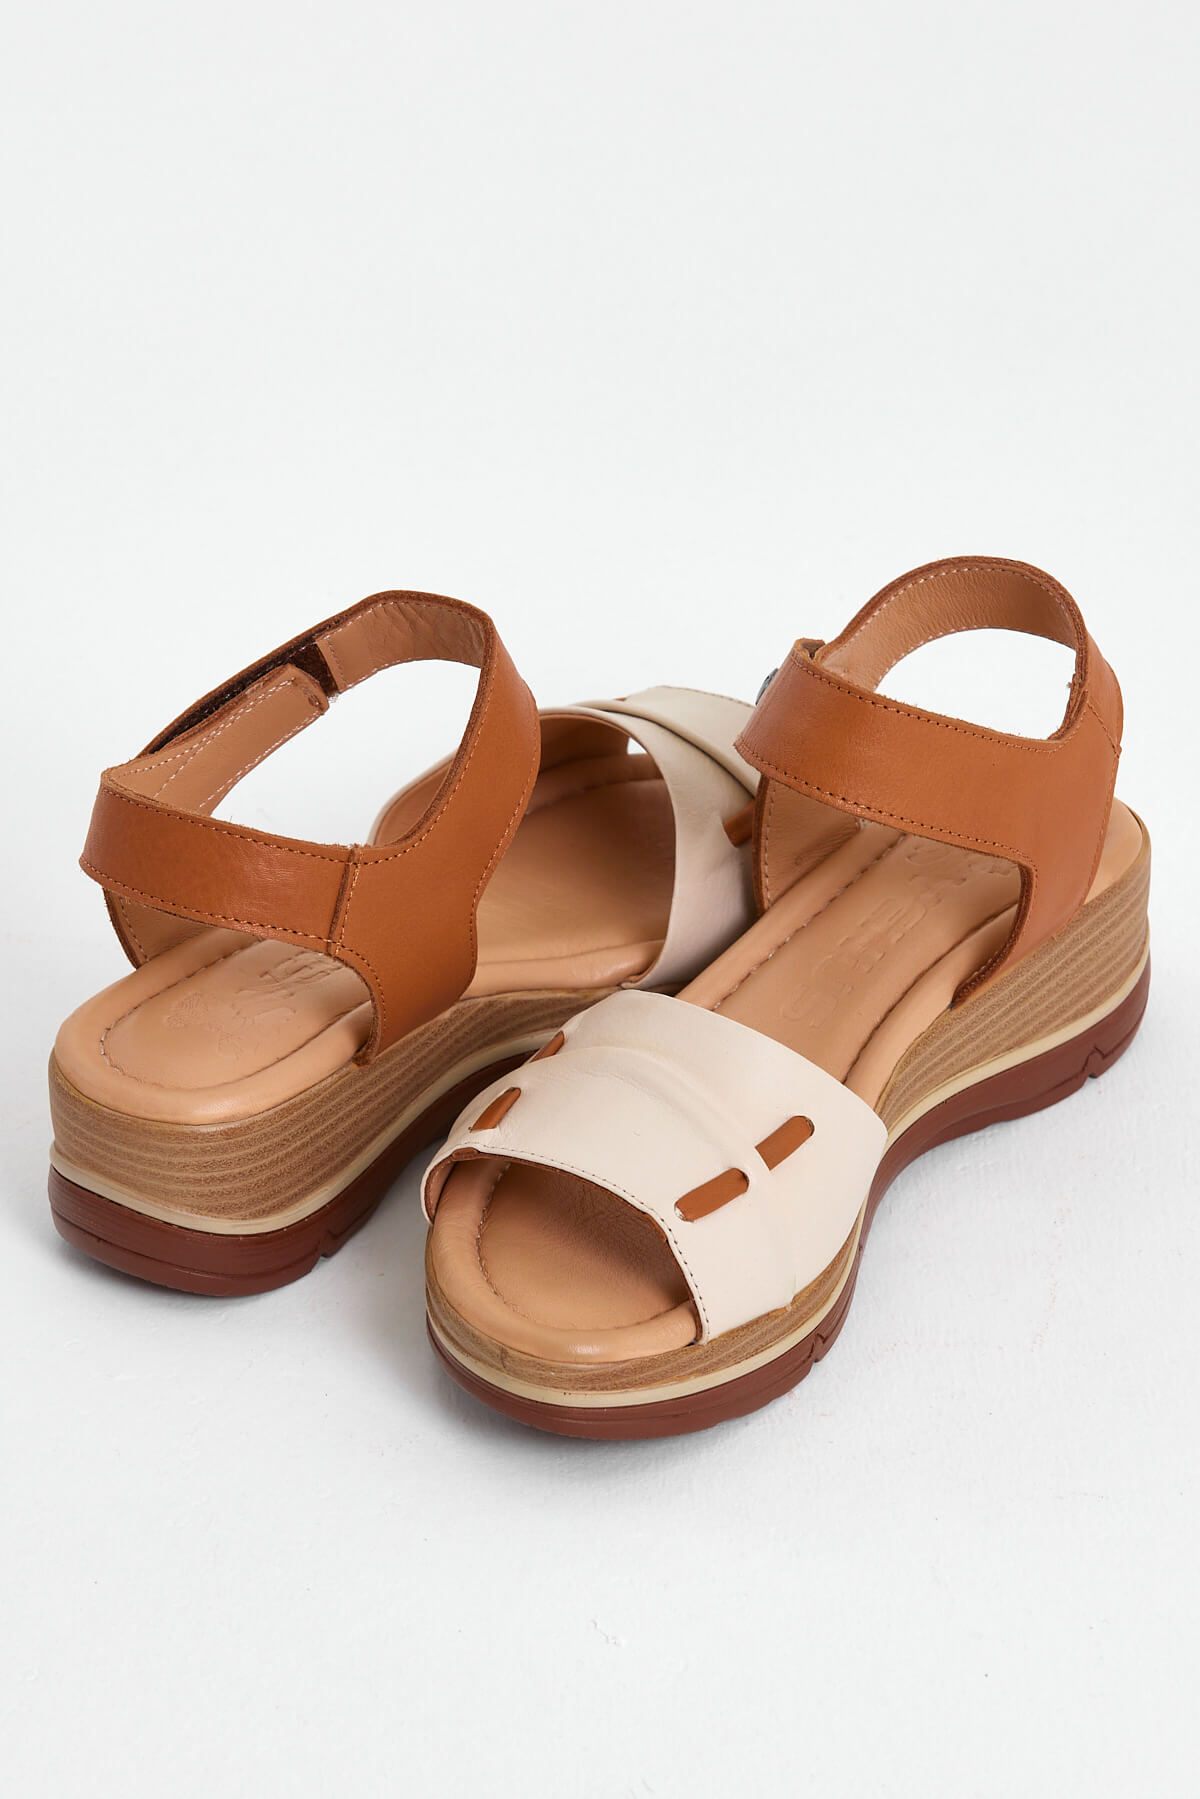 Kadın Comfort Deri Sandalet Bej 2313402Y